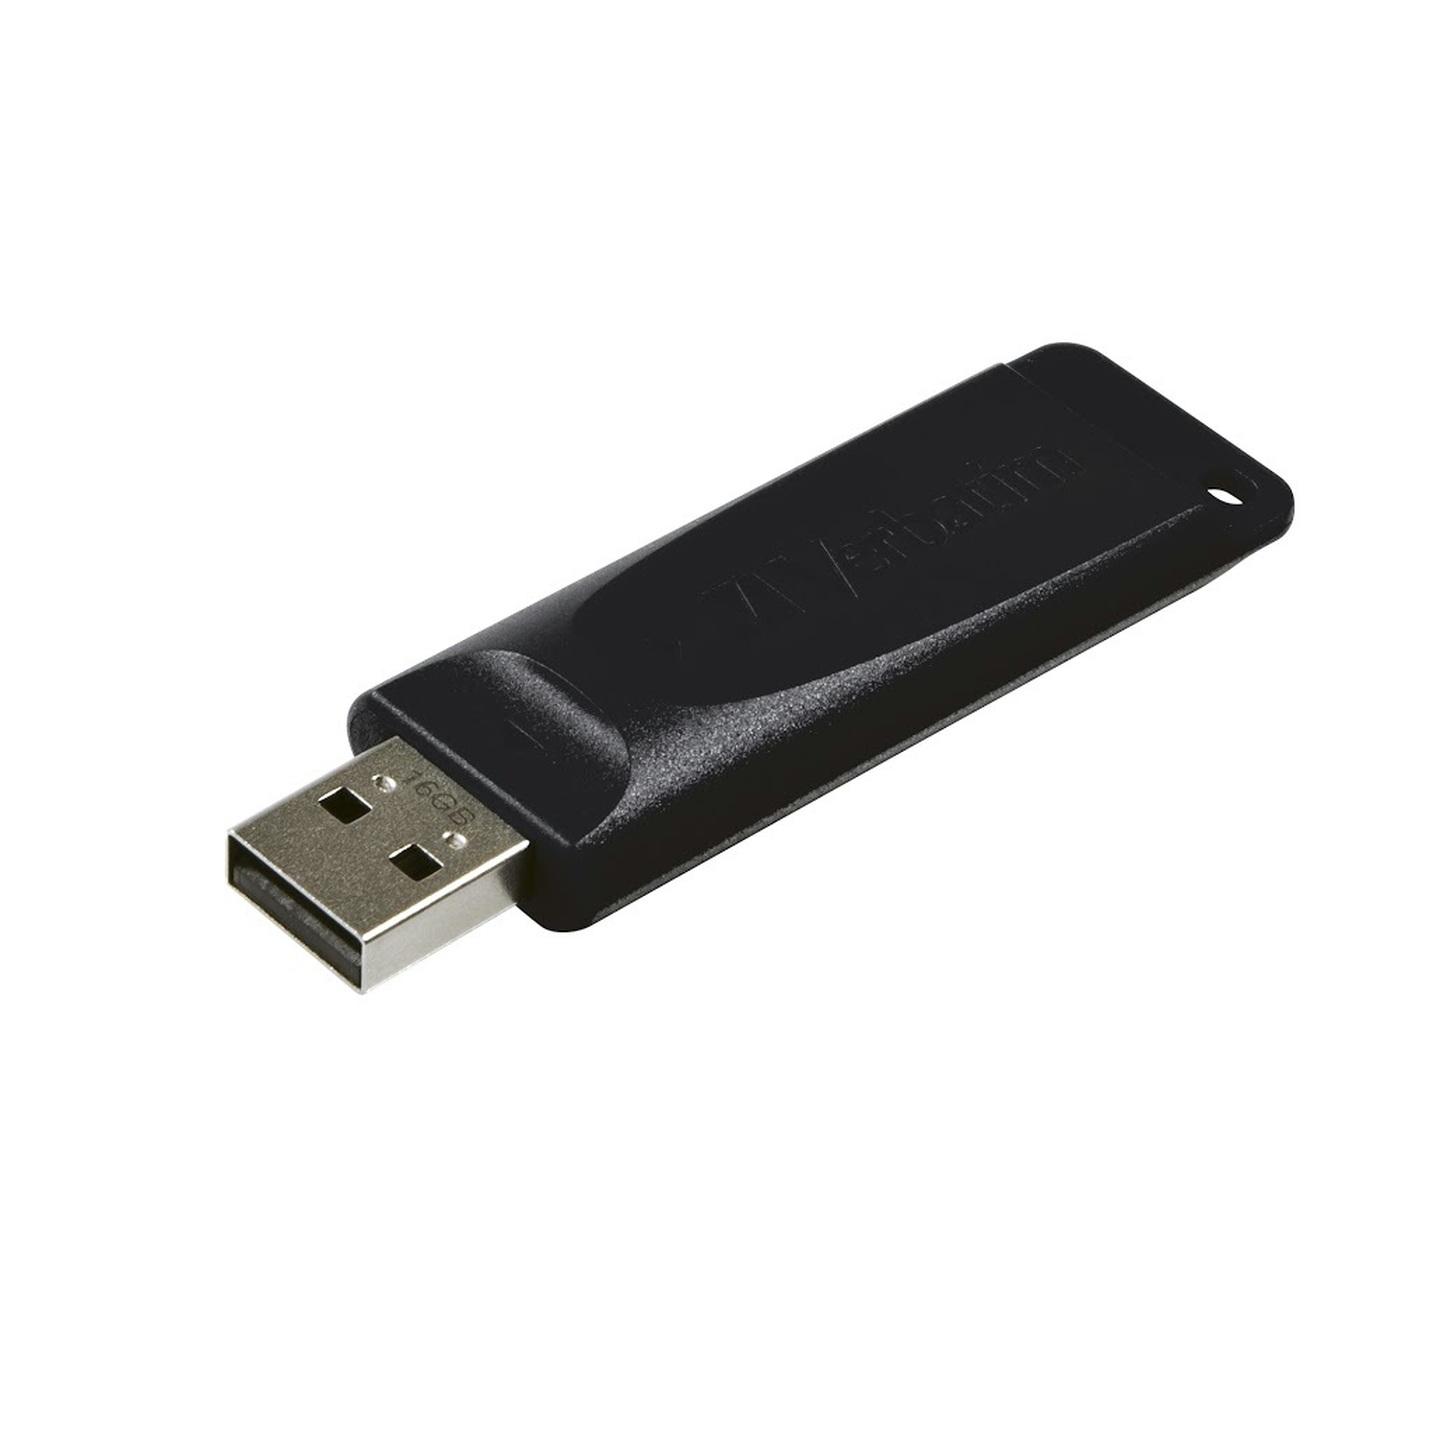 16GB USB Thumbdrive